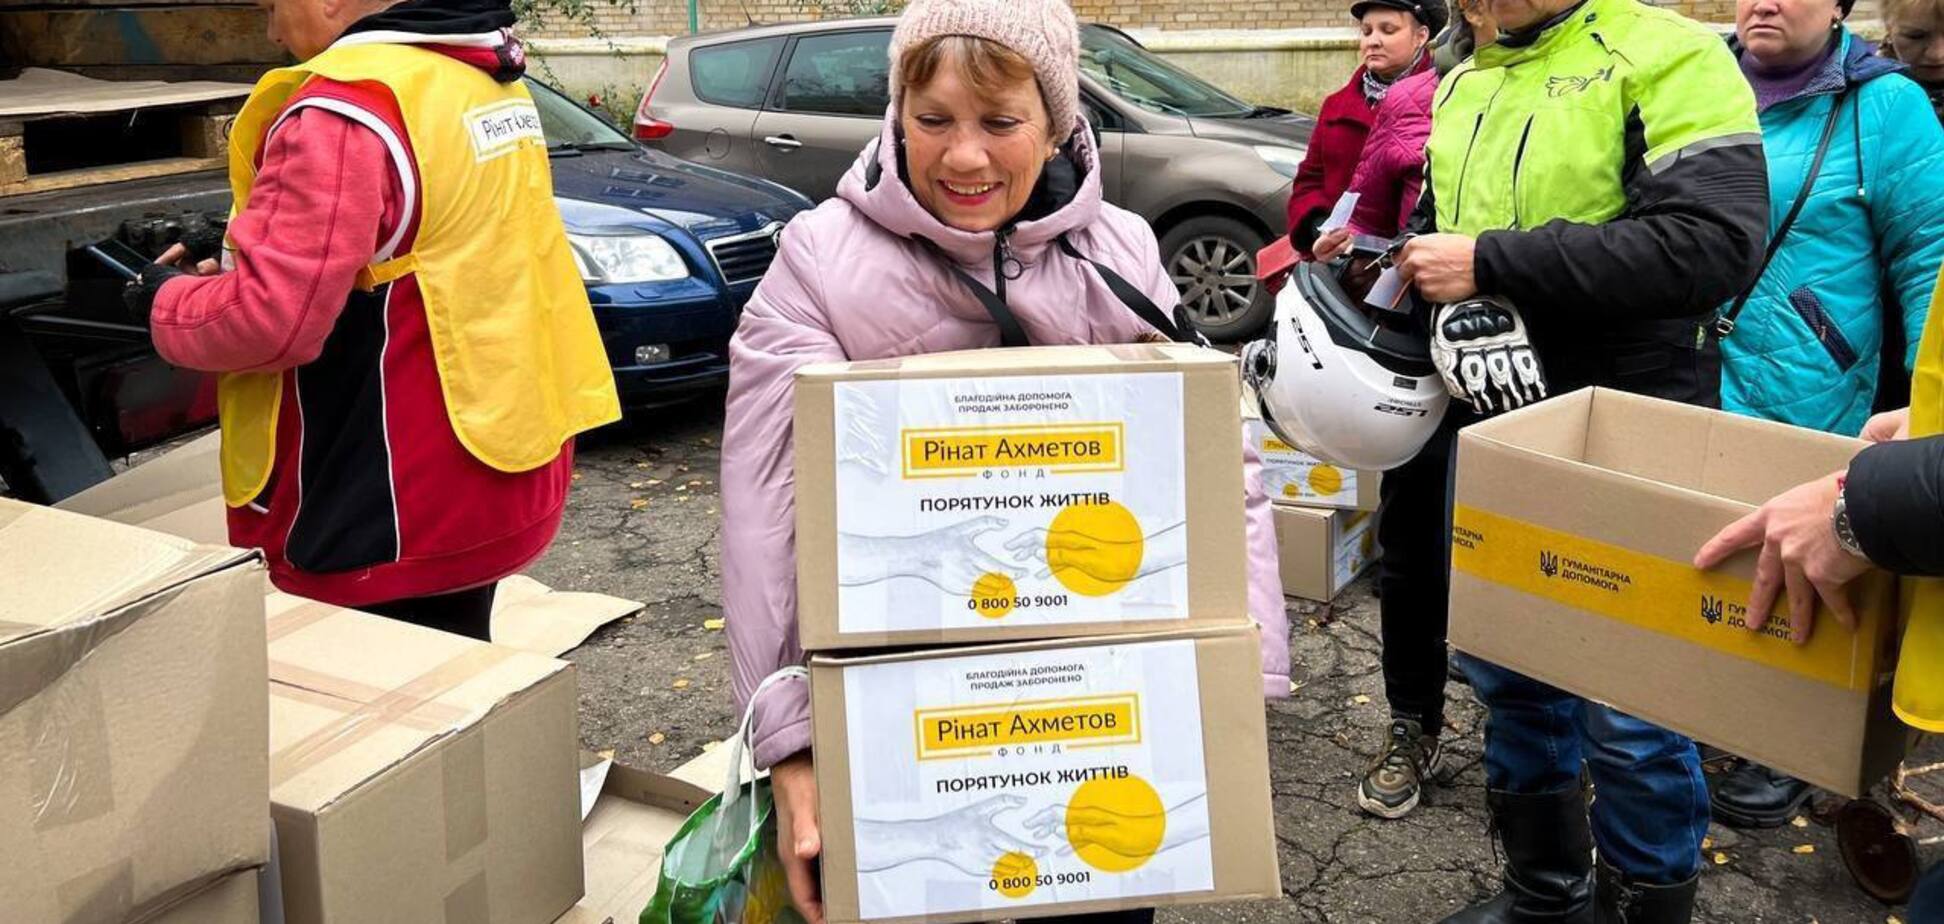 Костянтинівка отримала гуманітарну допомогу від Фонду Ахметова